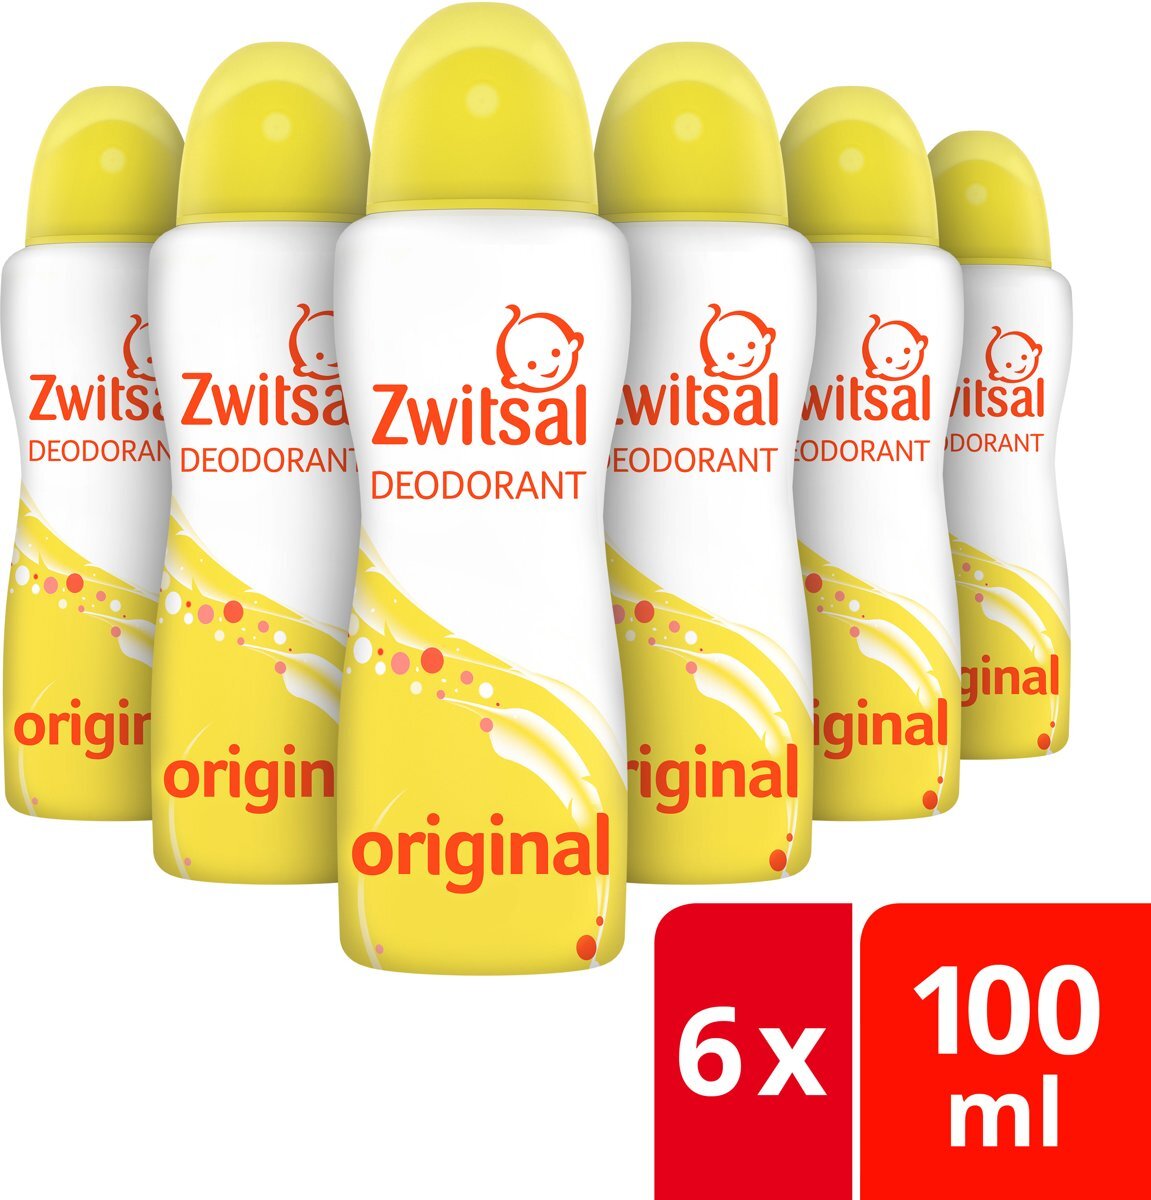 Zwitsal Original Deodorant - 6 x 100ml - Voordeelverpakking